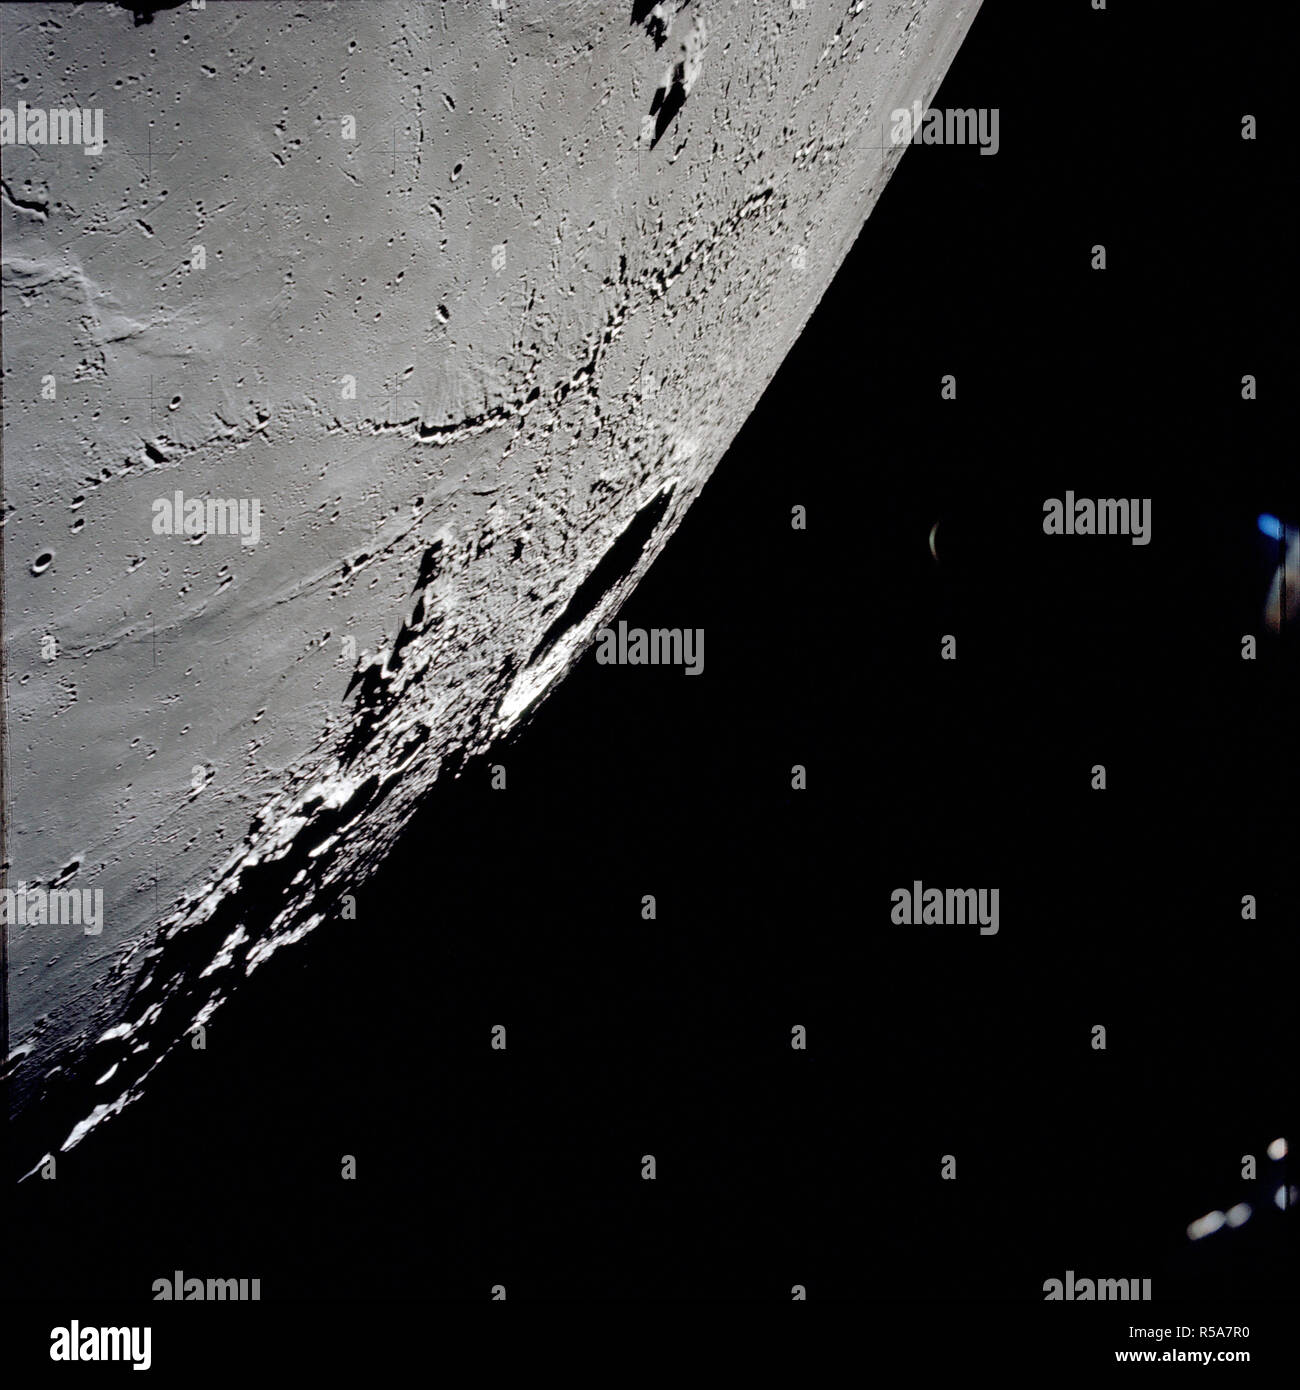 (7-19 Dez. 1972) - - - eine eine eine eine eine Schrägansicht der große Krater Kopernikus auf den Lunar nearside, wie von der Apollo 17 Sonde in der Mondumlaufbahn fotografiert. Diese Ansicht wird in der Regel in Richtung Südwesten der Krater auf den Horizont schauen. Stockfoto